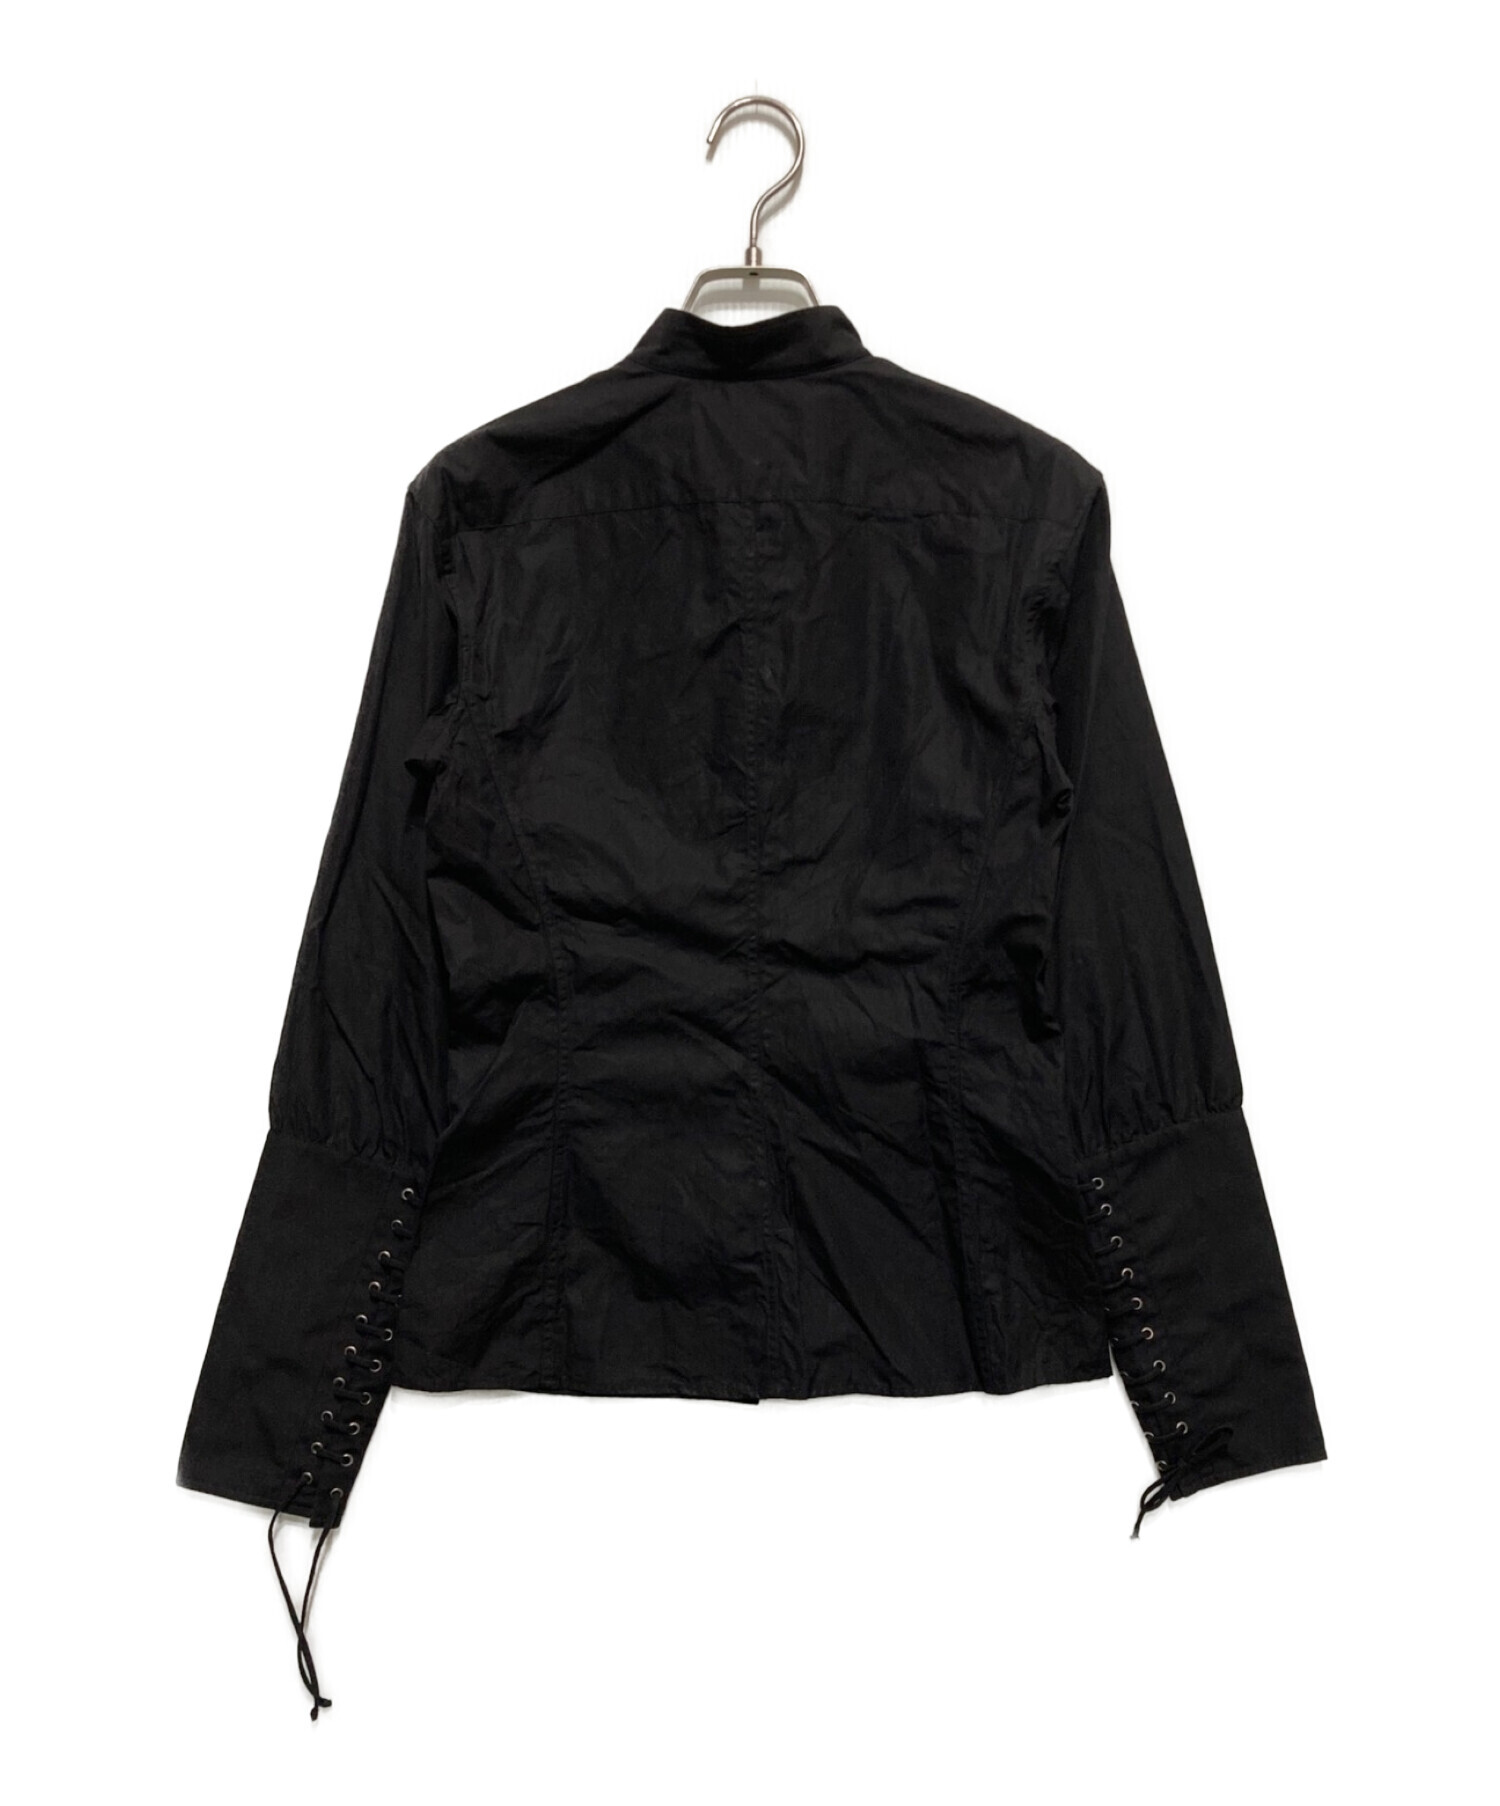 Yves Saint Laurent Rive Gauche (イヴ・サンローラン リヴ・ゴーシュ) シャツ ブラック サイズ:SIZE34